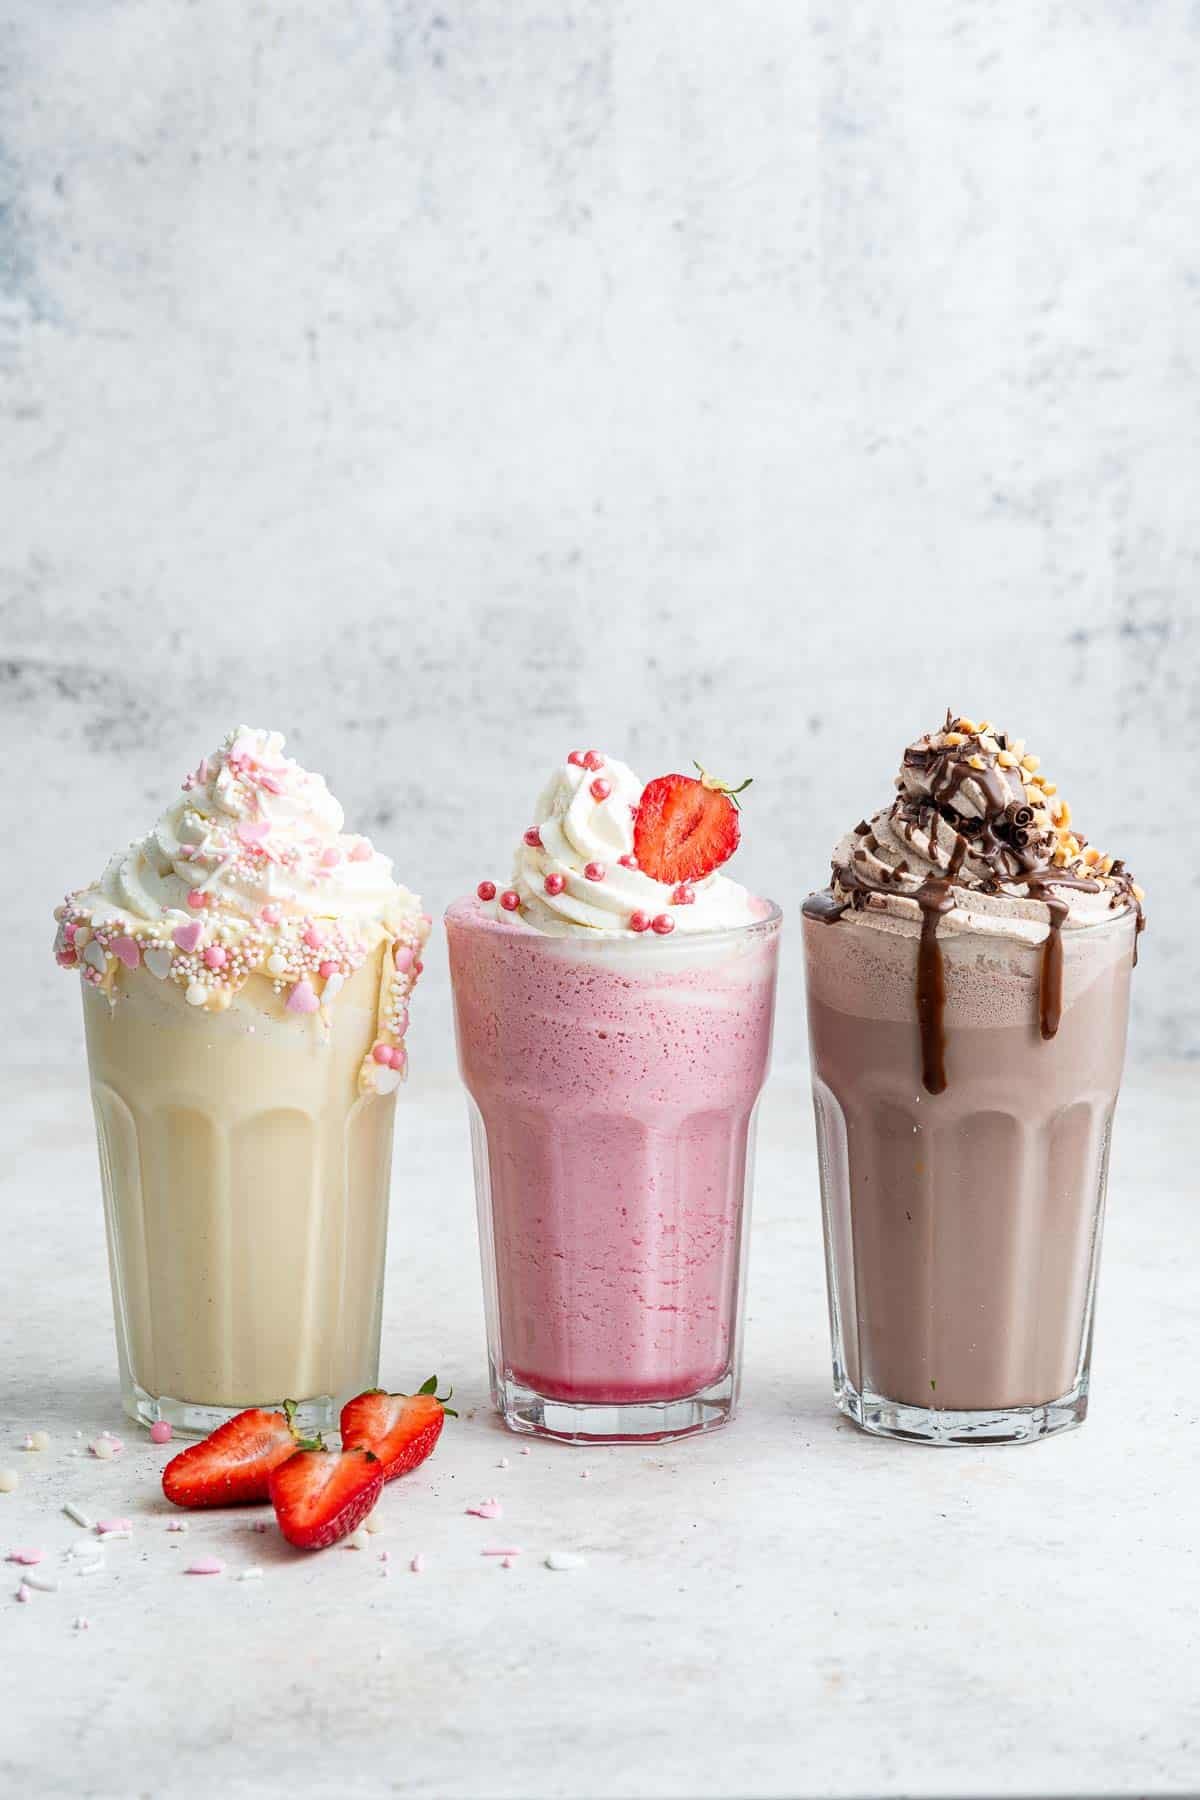 Vertical image of 3 milkshakes: vanilla, strawberry and chocolate.